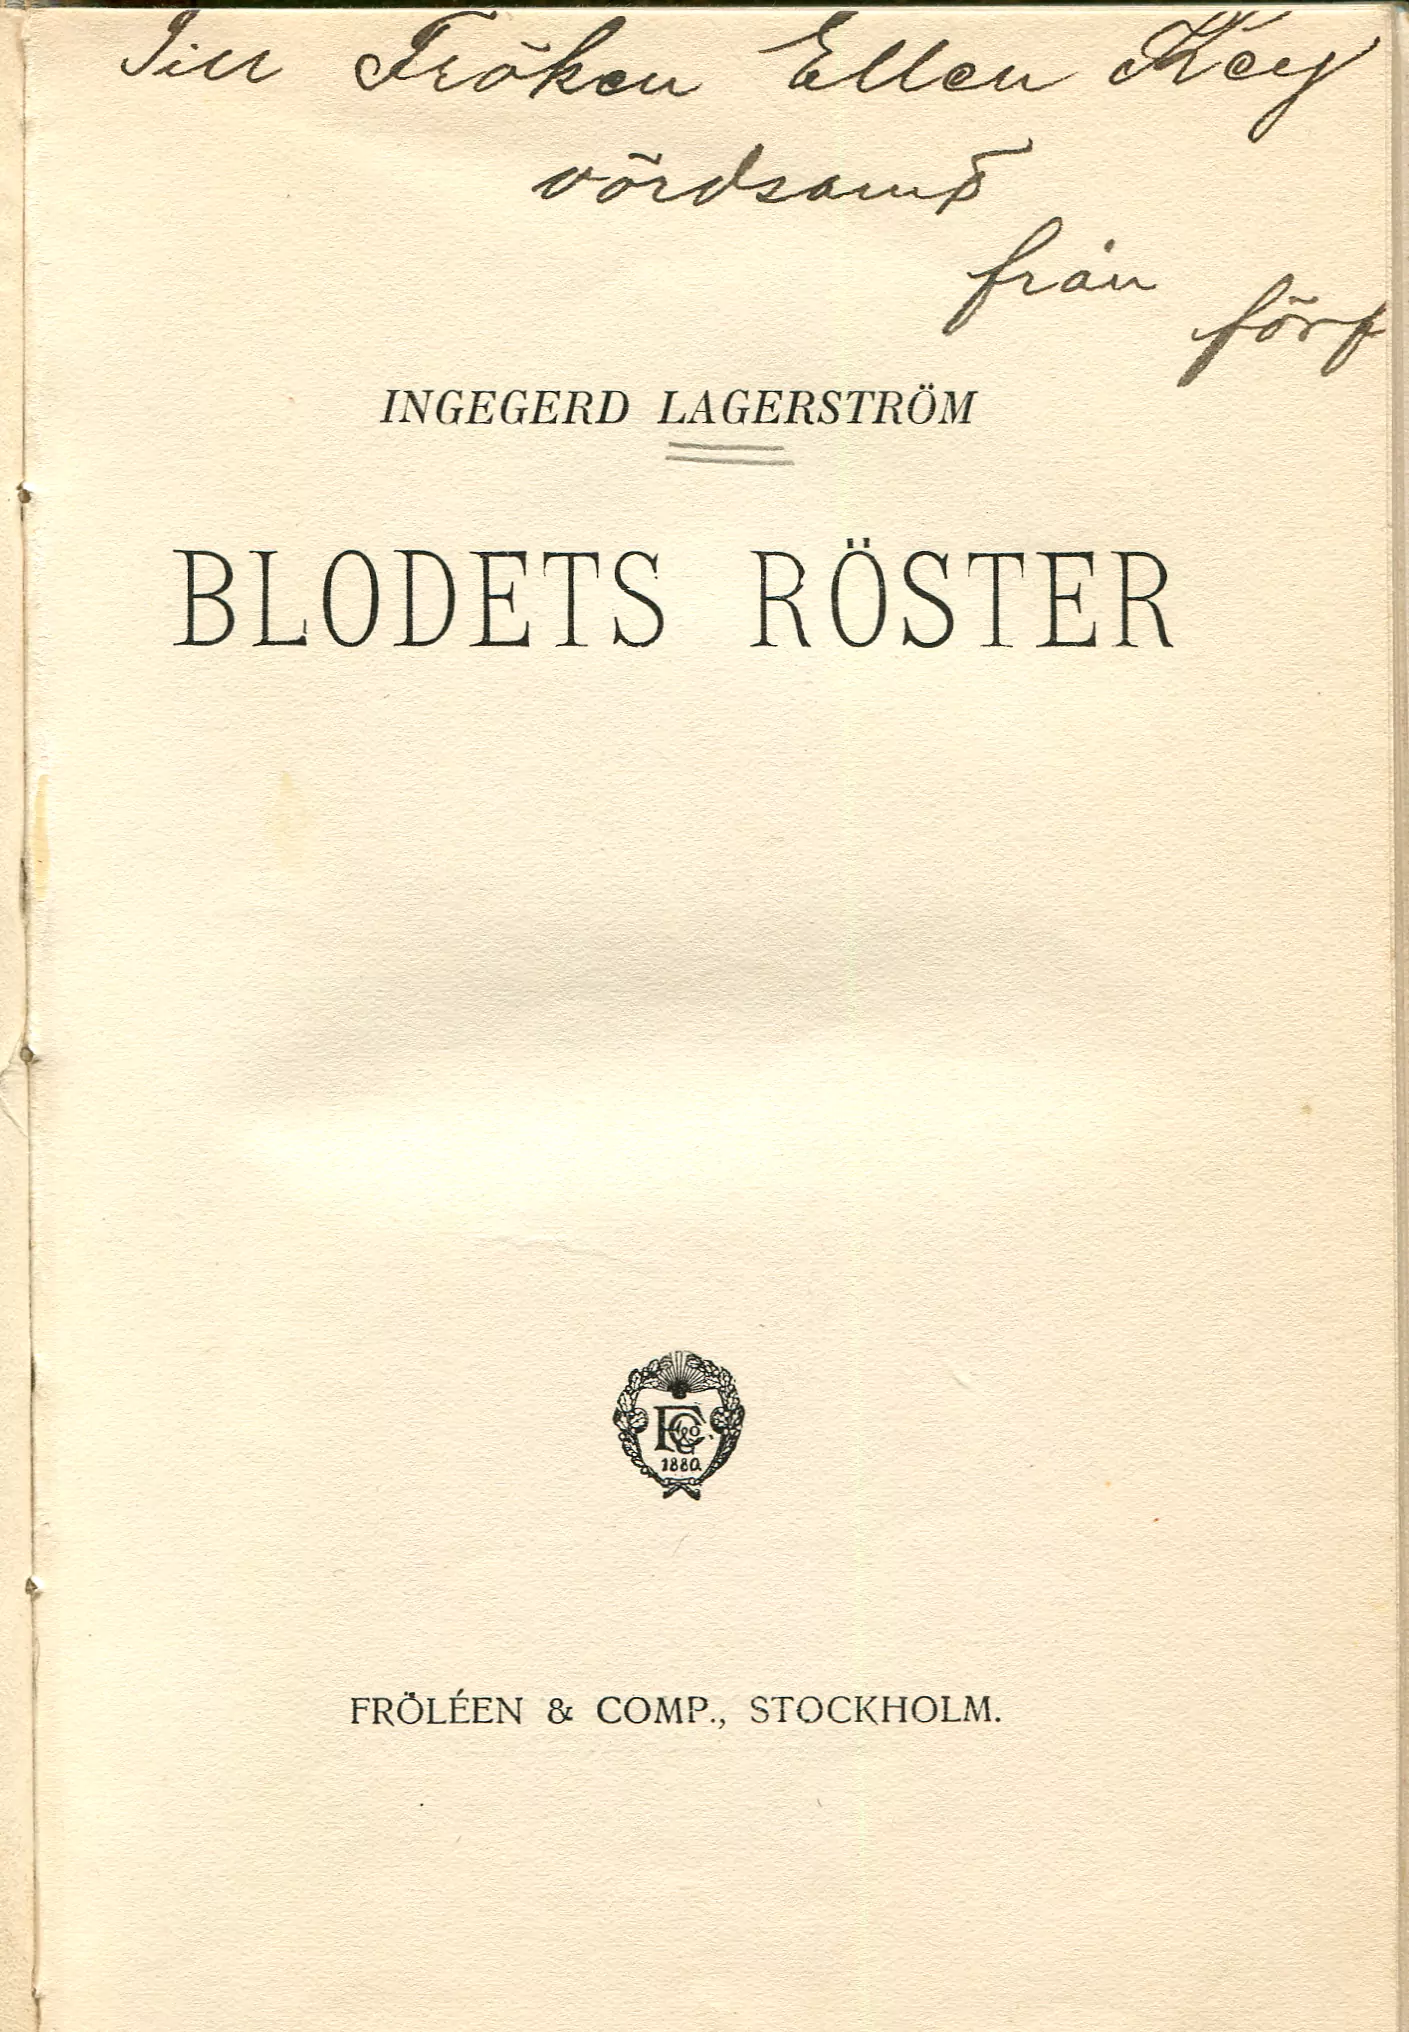 Blodets röster, Stockholm 1910